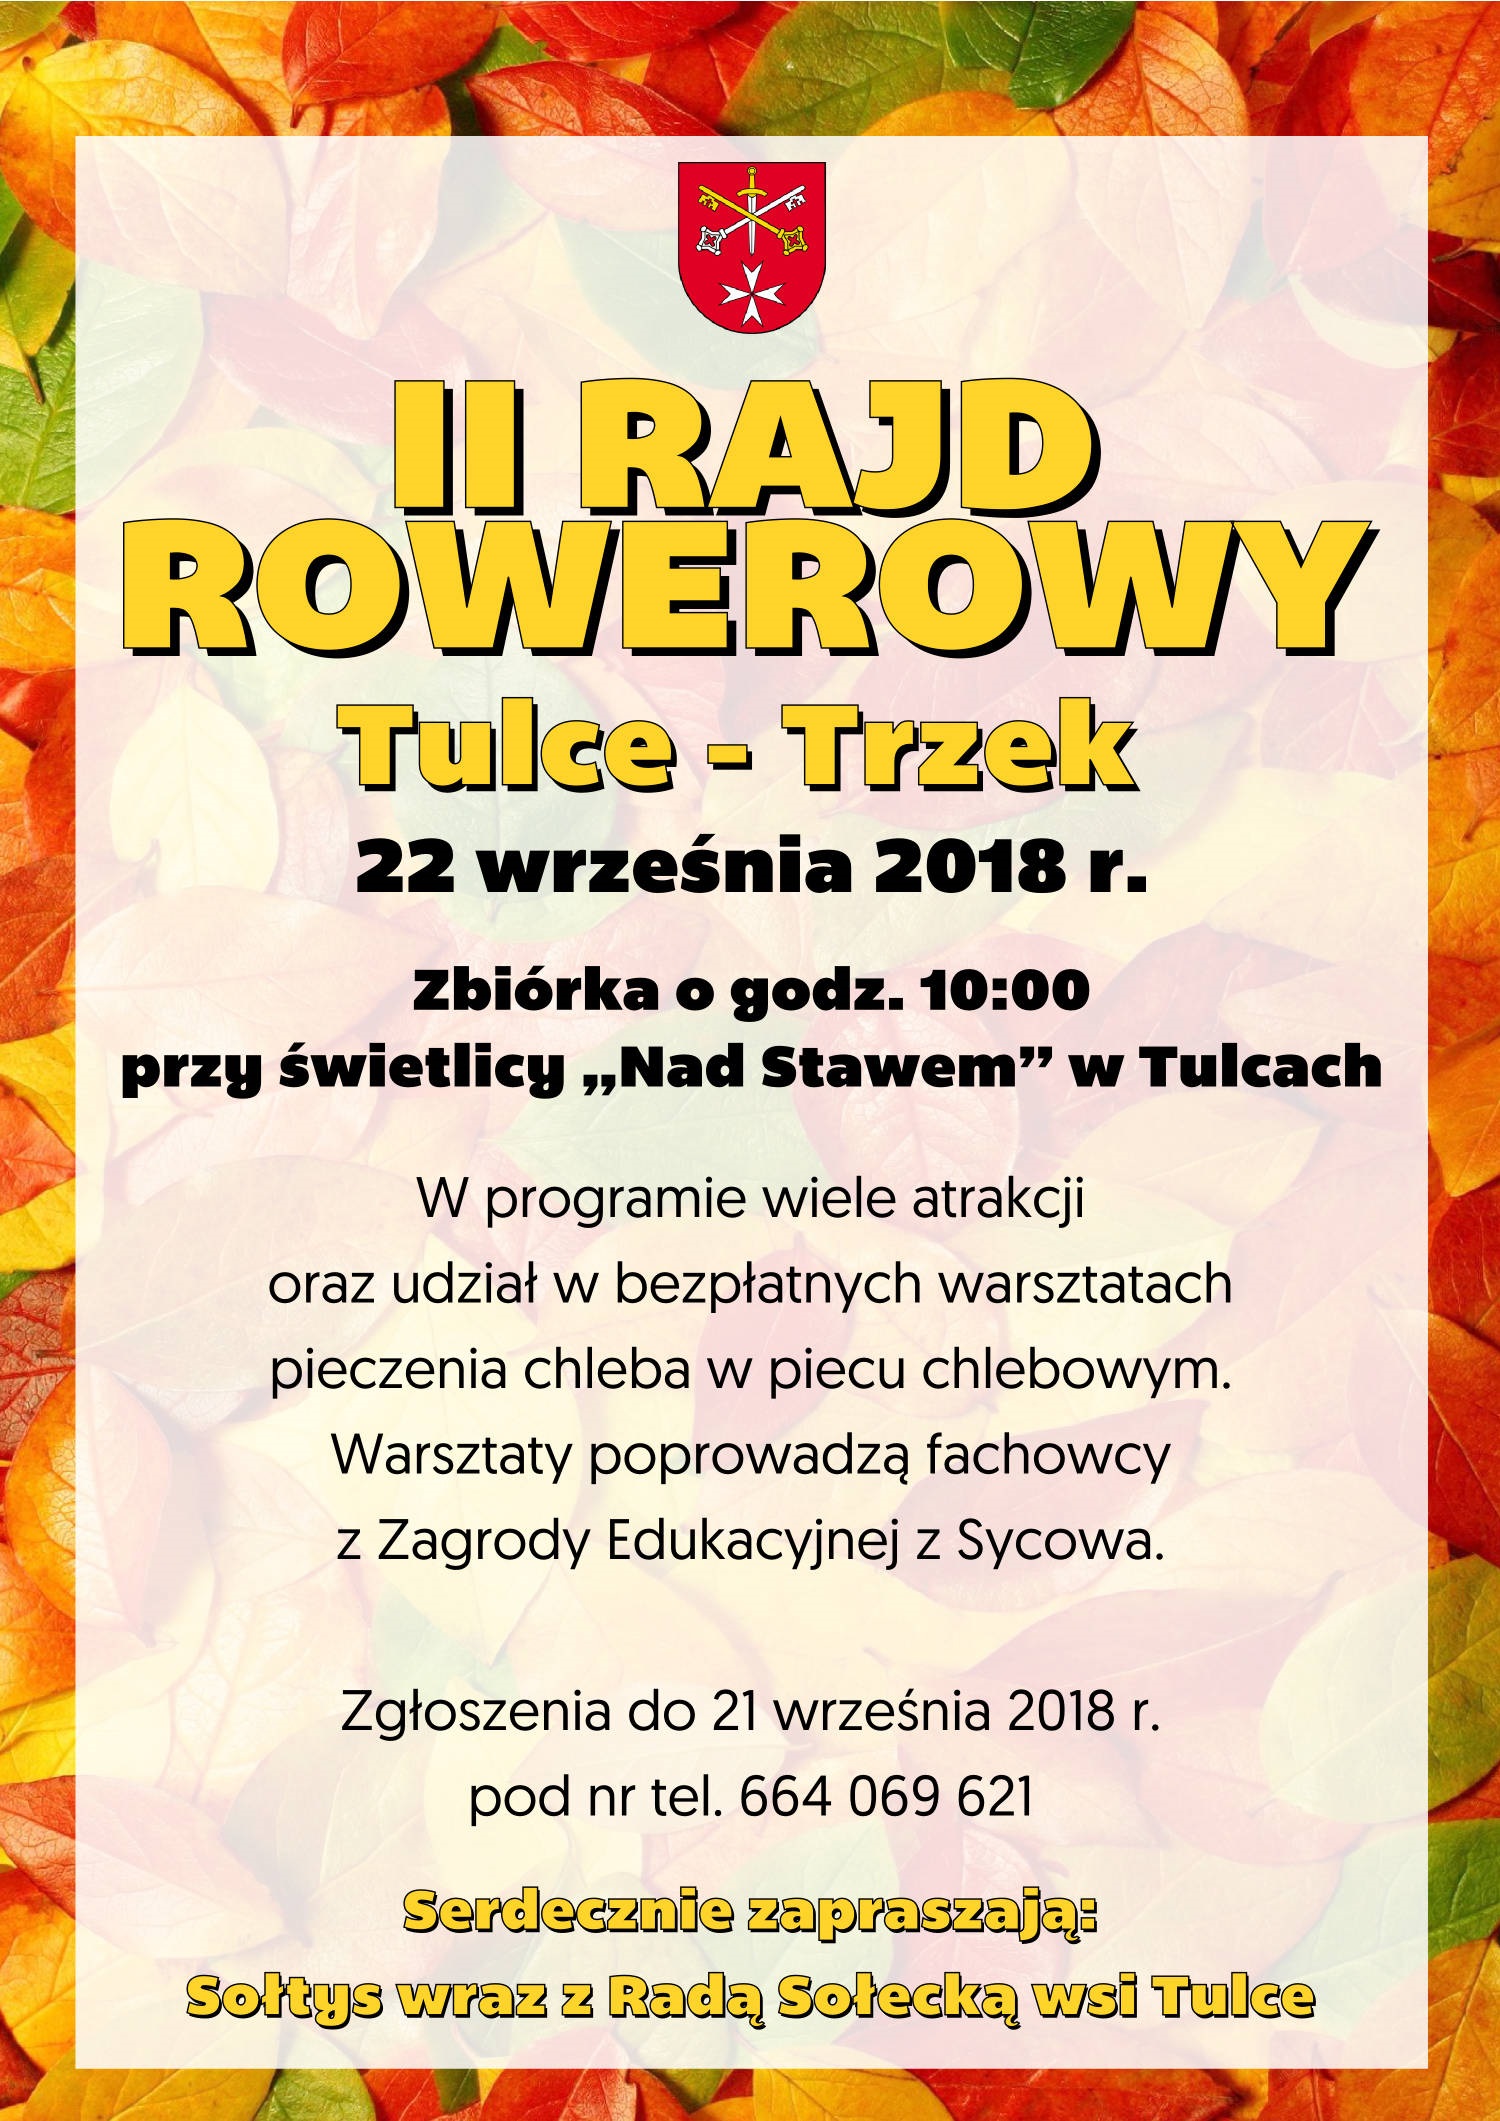 Rajd Rowerowy Tulce- Trzek